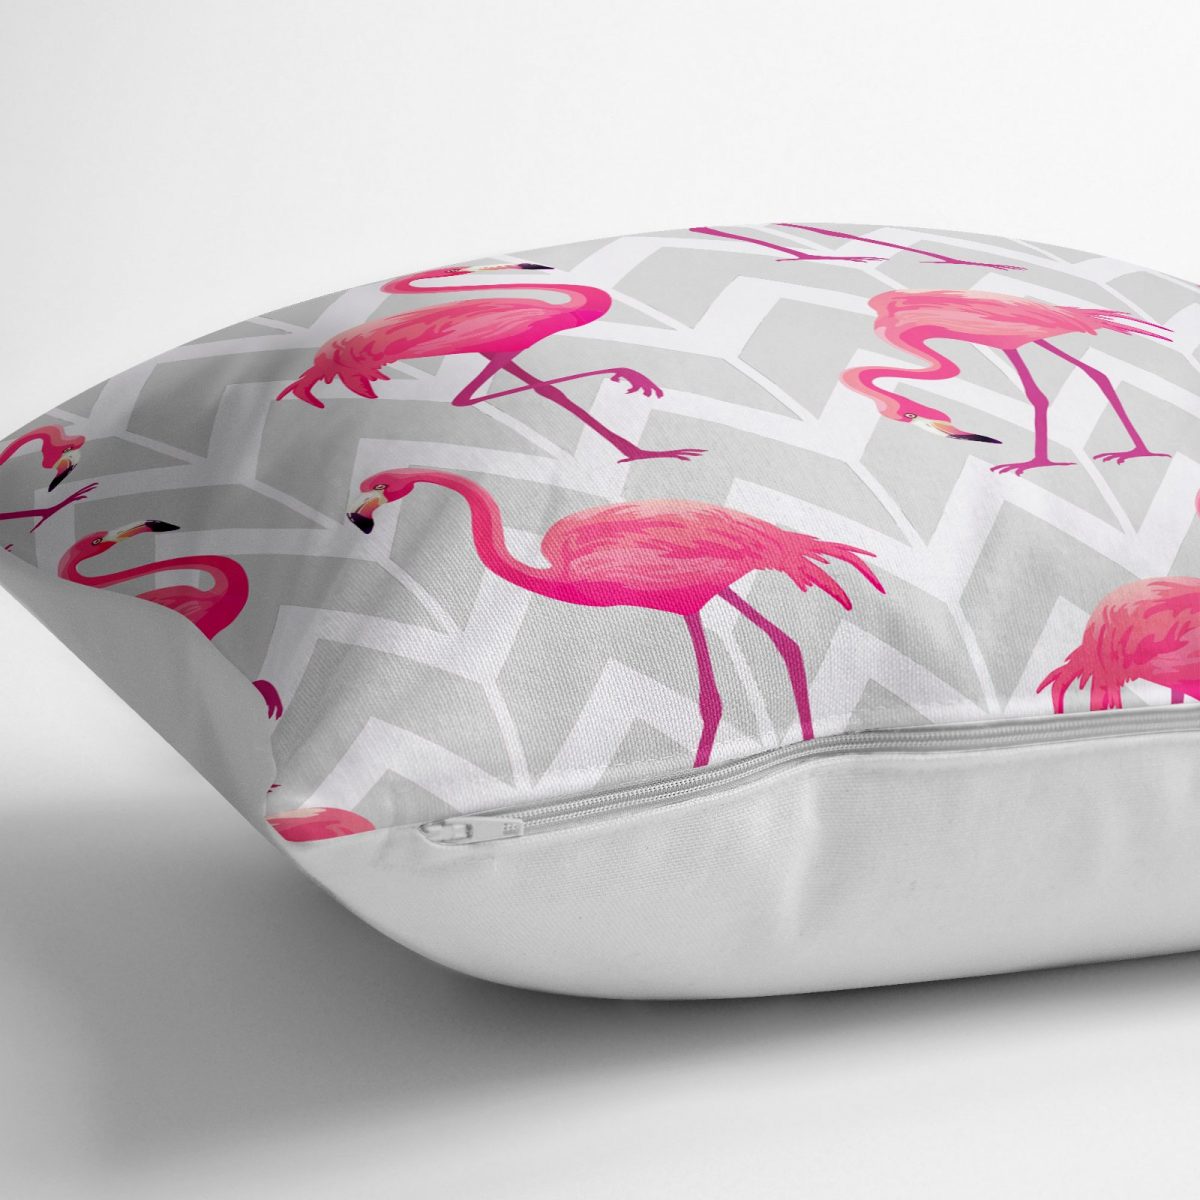 Gri Zeminde Flamingo Tasarımlı Özel Tasarımlı Dekoratif Salon Minderi - 70 x 70 cm Realhomes